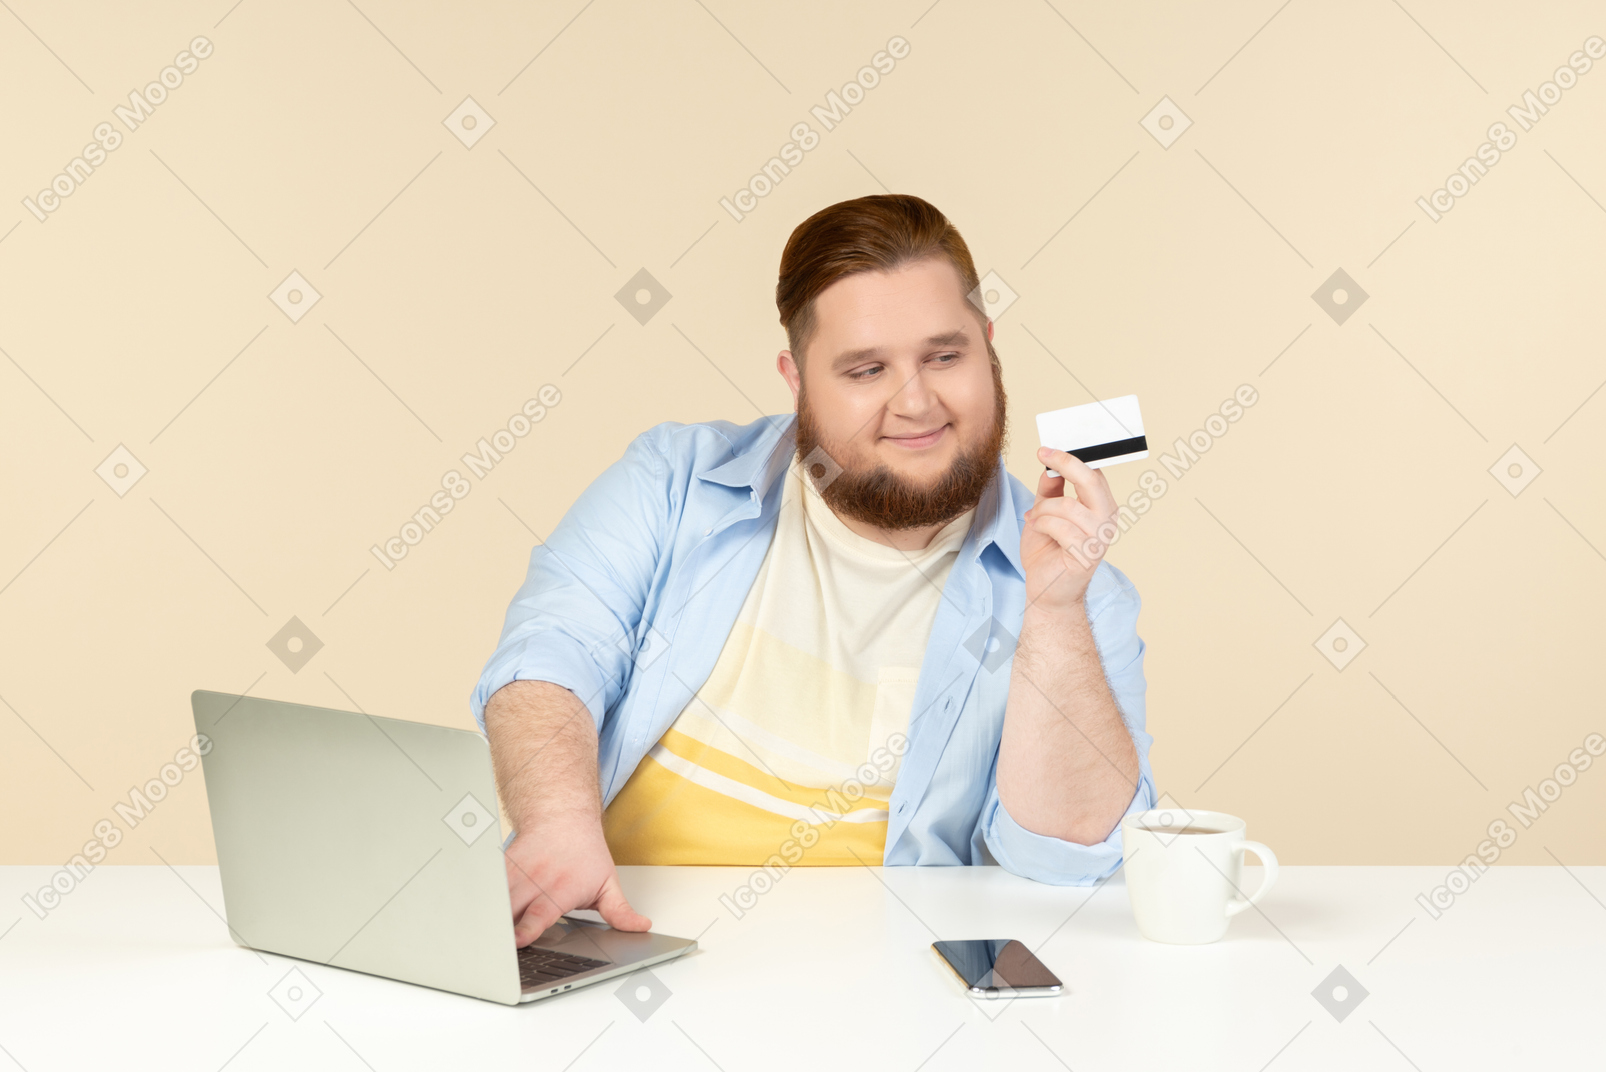 Contente jovem homem com excesso de peso, sentado à mesa e olhando para o cartão do banco